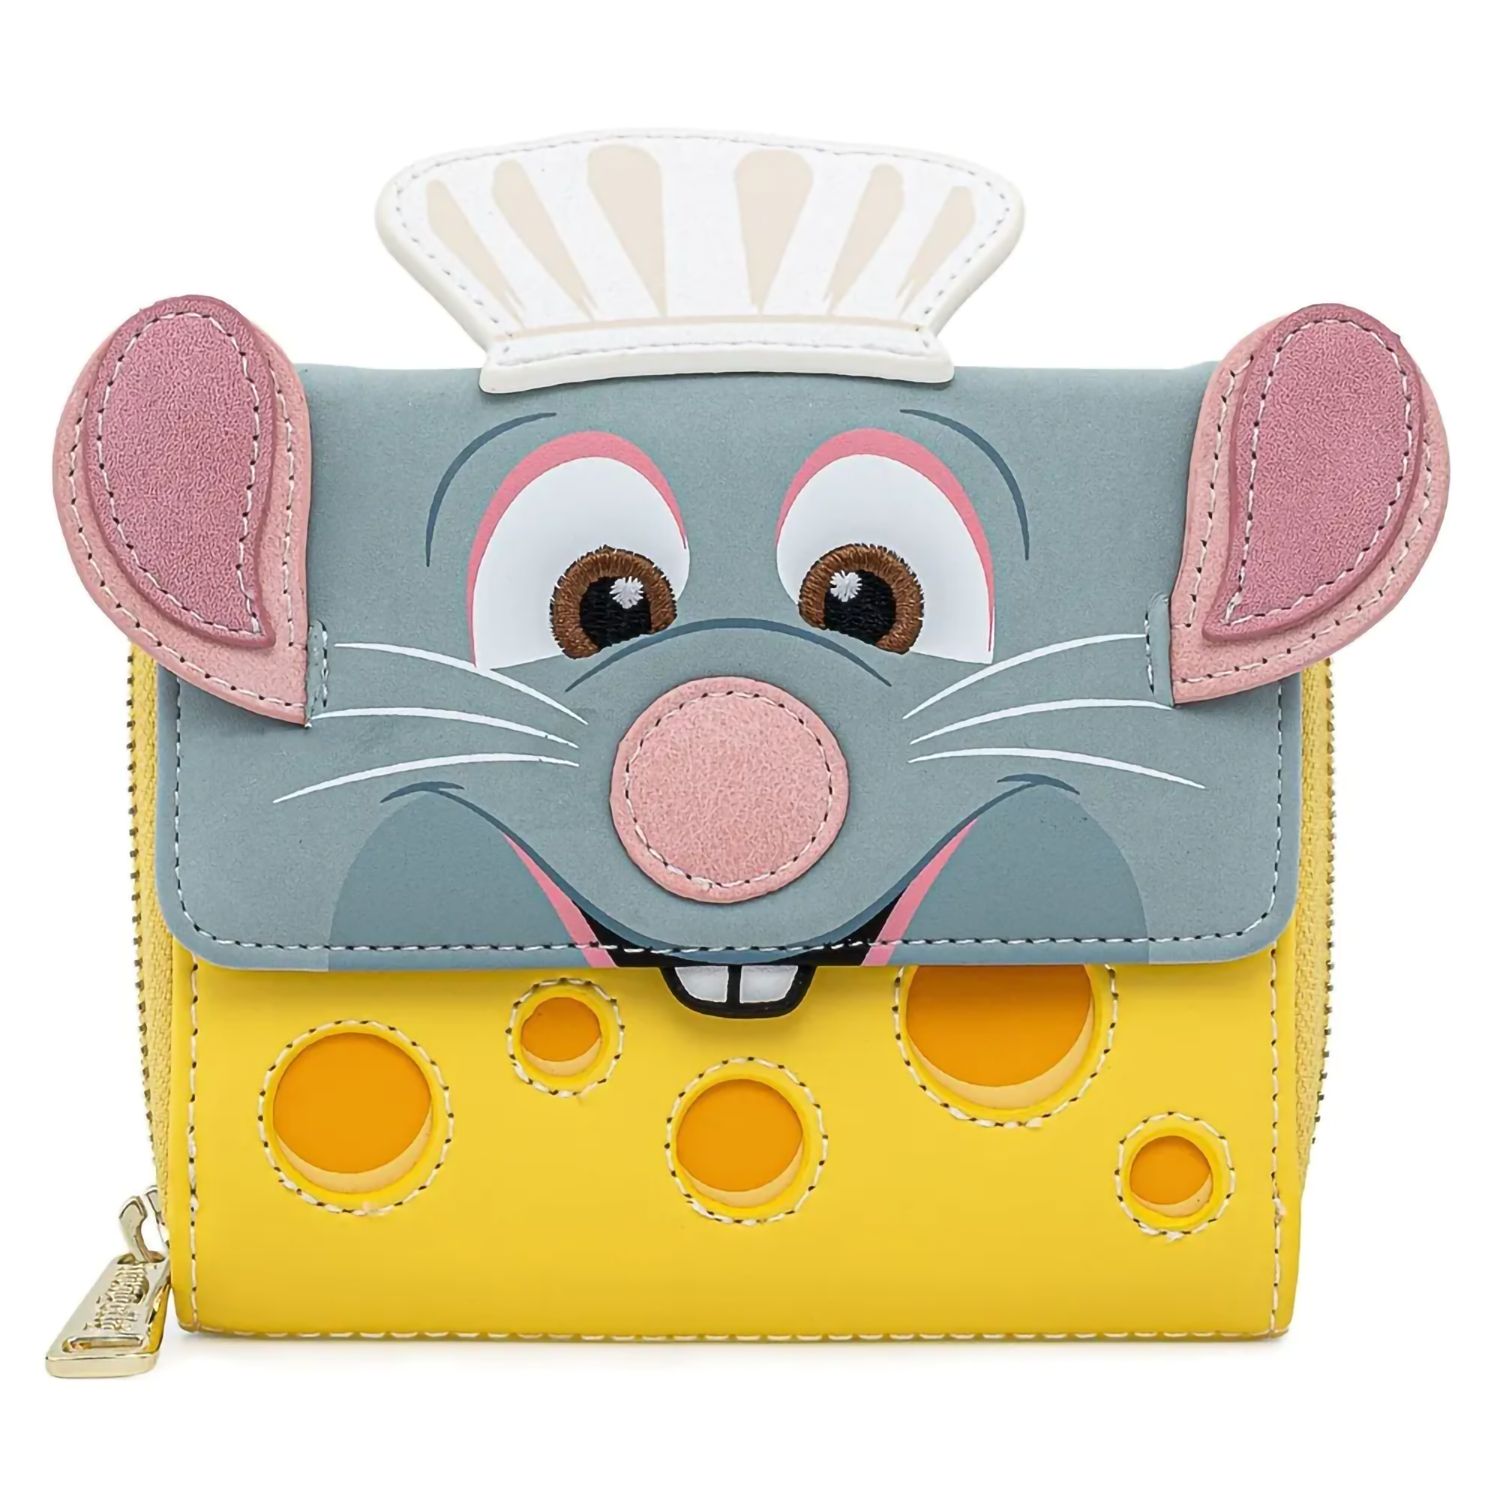 Кошелек Disney Pixar: Ratatouille Chef Cosplay от 1С Интерес